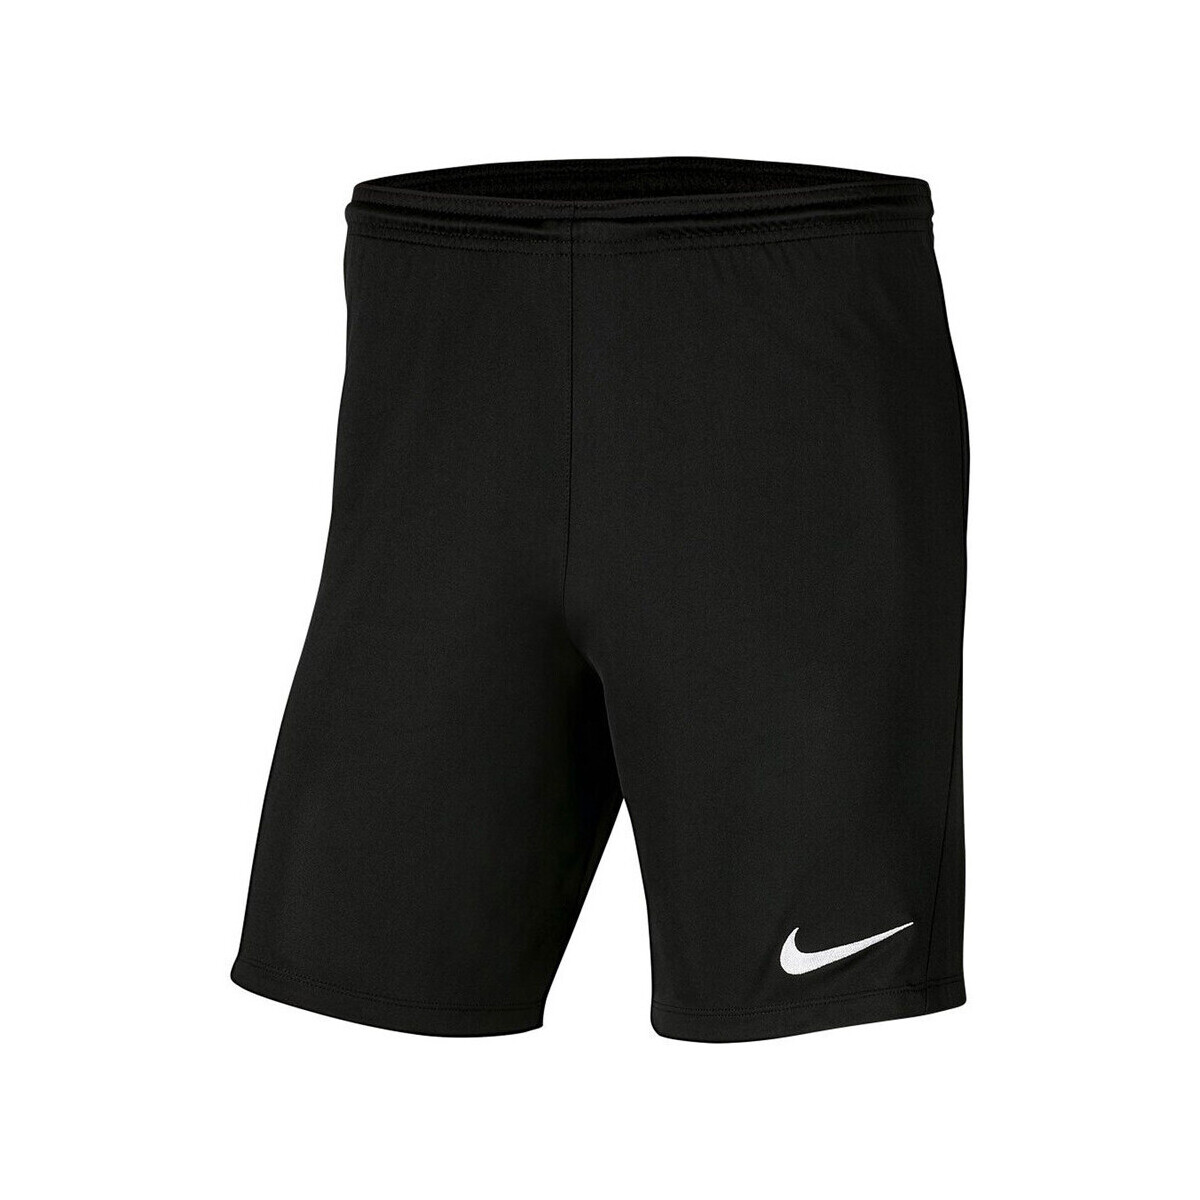 Textiel Meisjes Korte broeken / Bermuda's Nike  Zwart